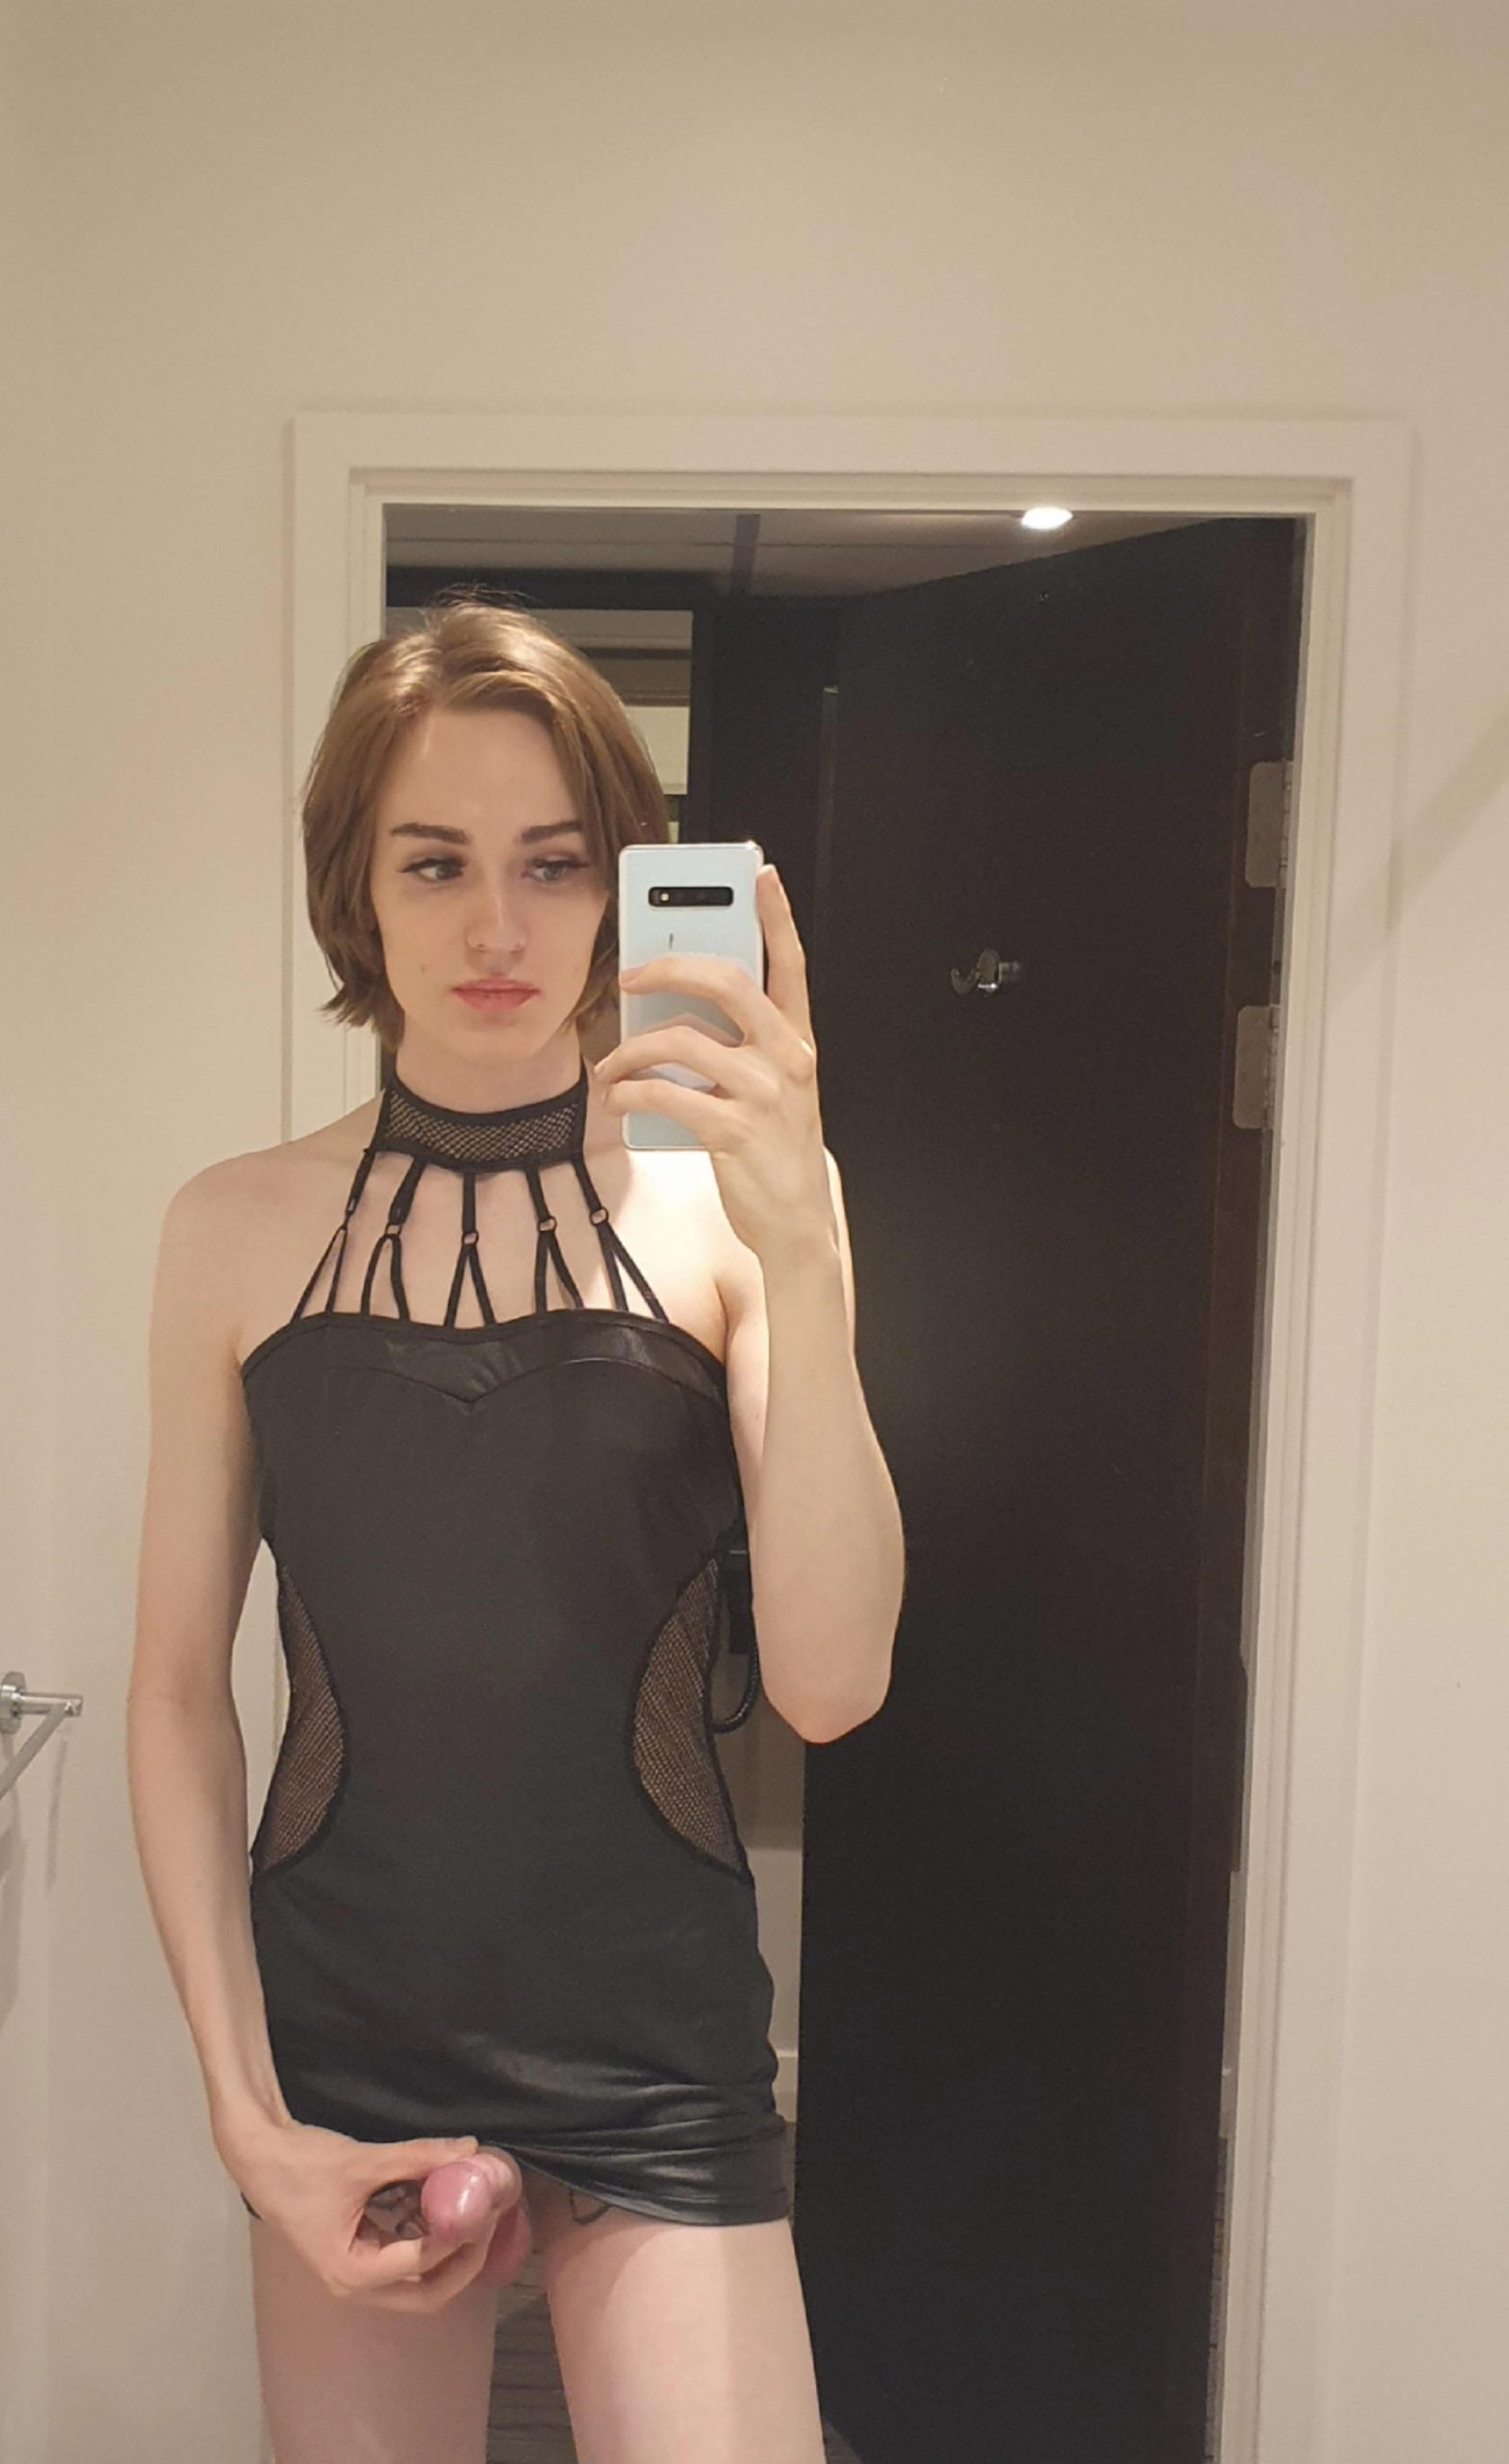 Guapa transexual en minivestido se toma una selfie mostrando su verga